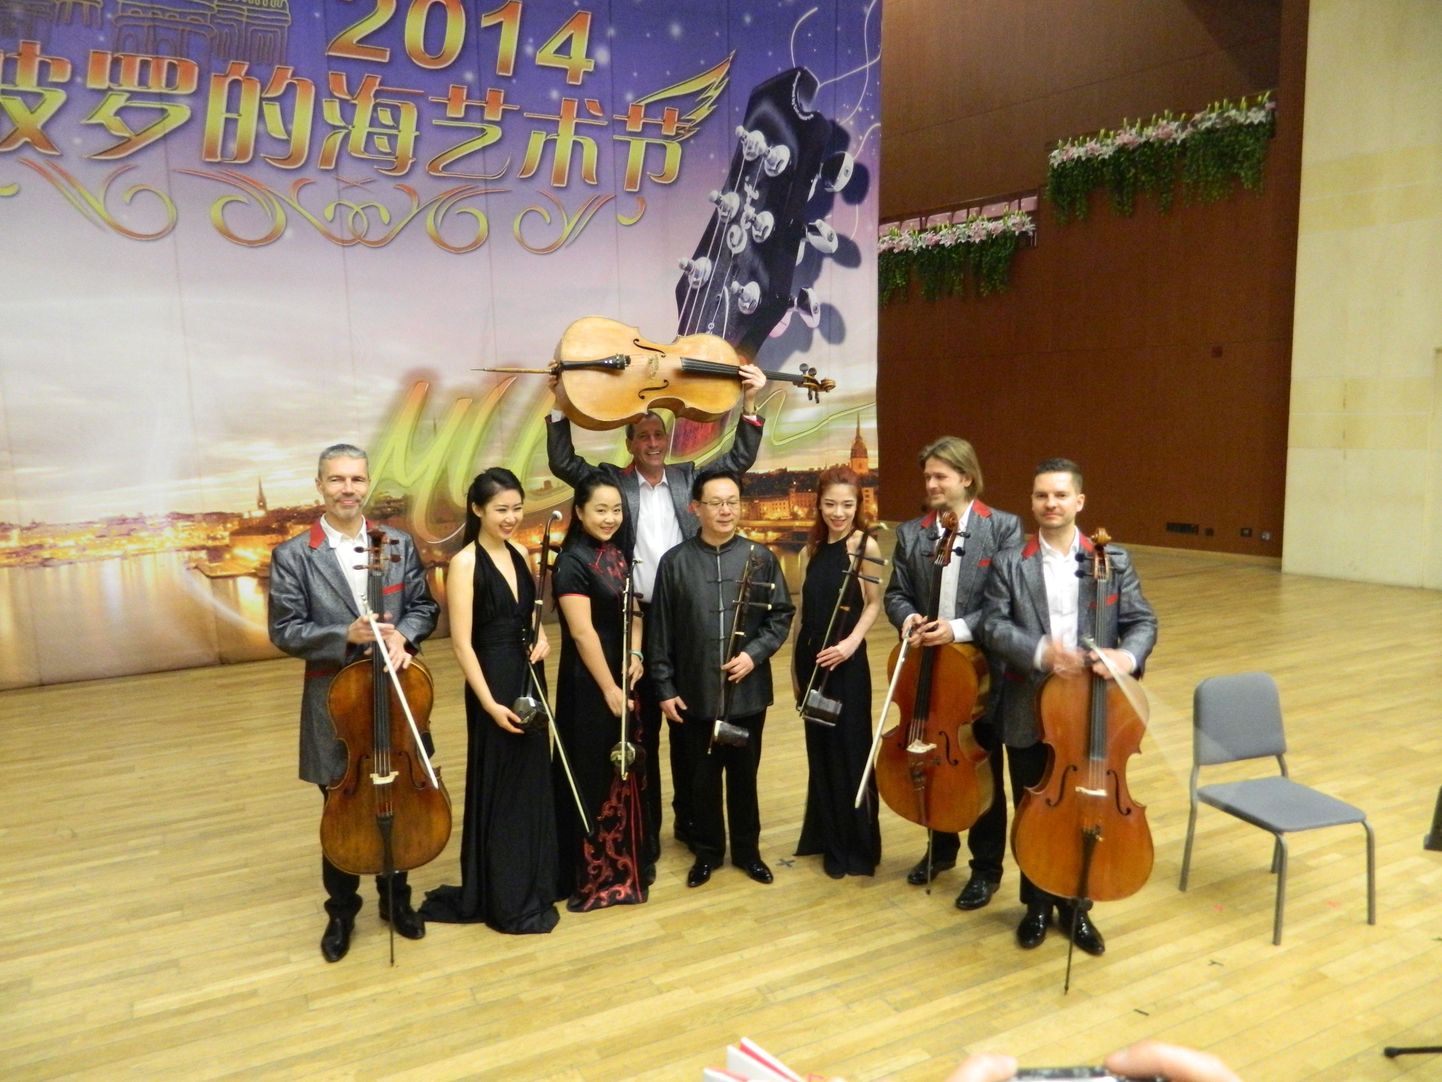 Pekingis esitas C-JAM paar lugu koos Erhude kvartetiga, kellega ka fotol poseeritakse.